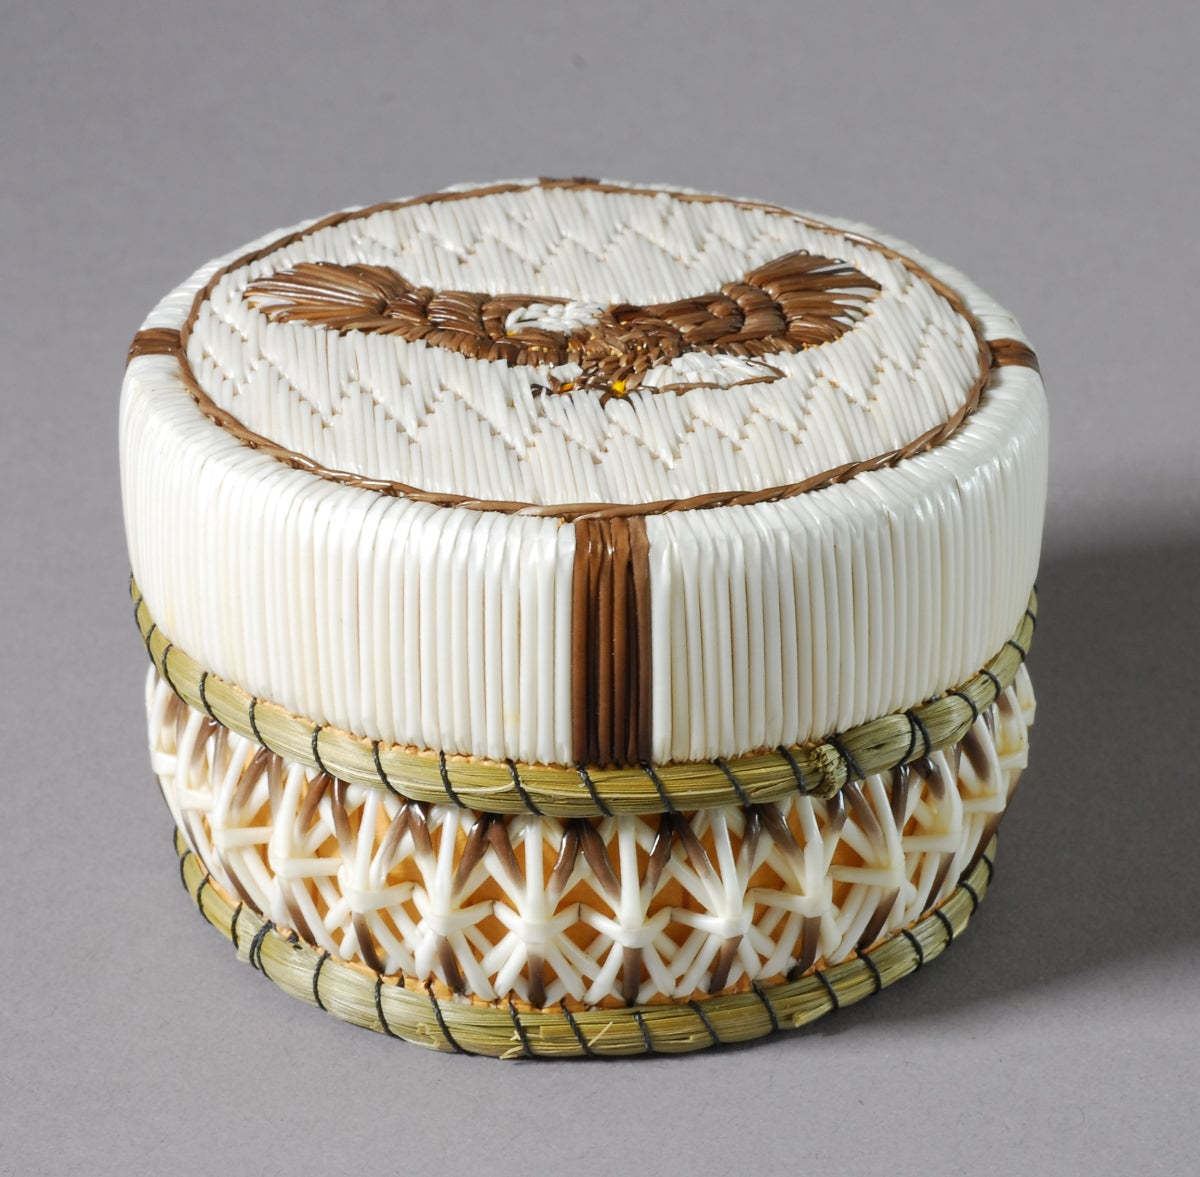 Porcupine Quill Box by Jean Mishibinijima